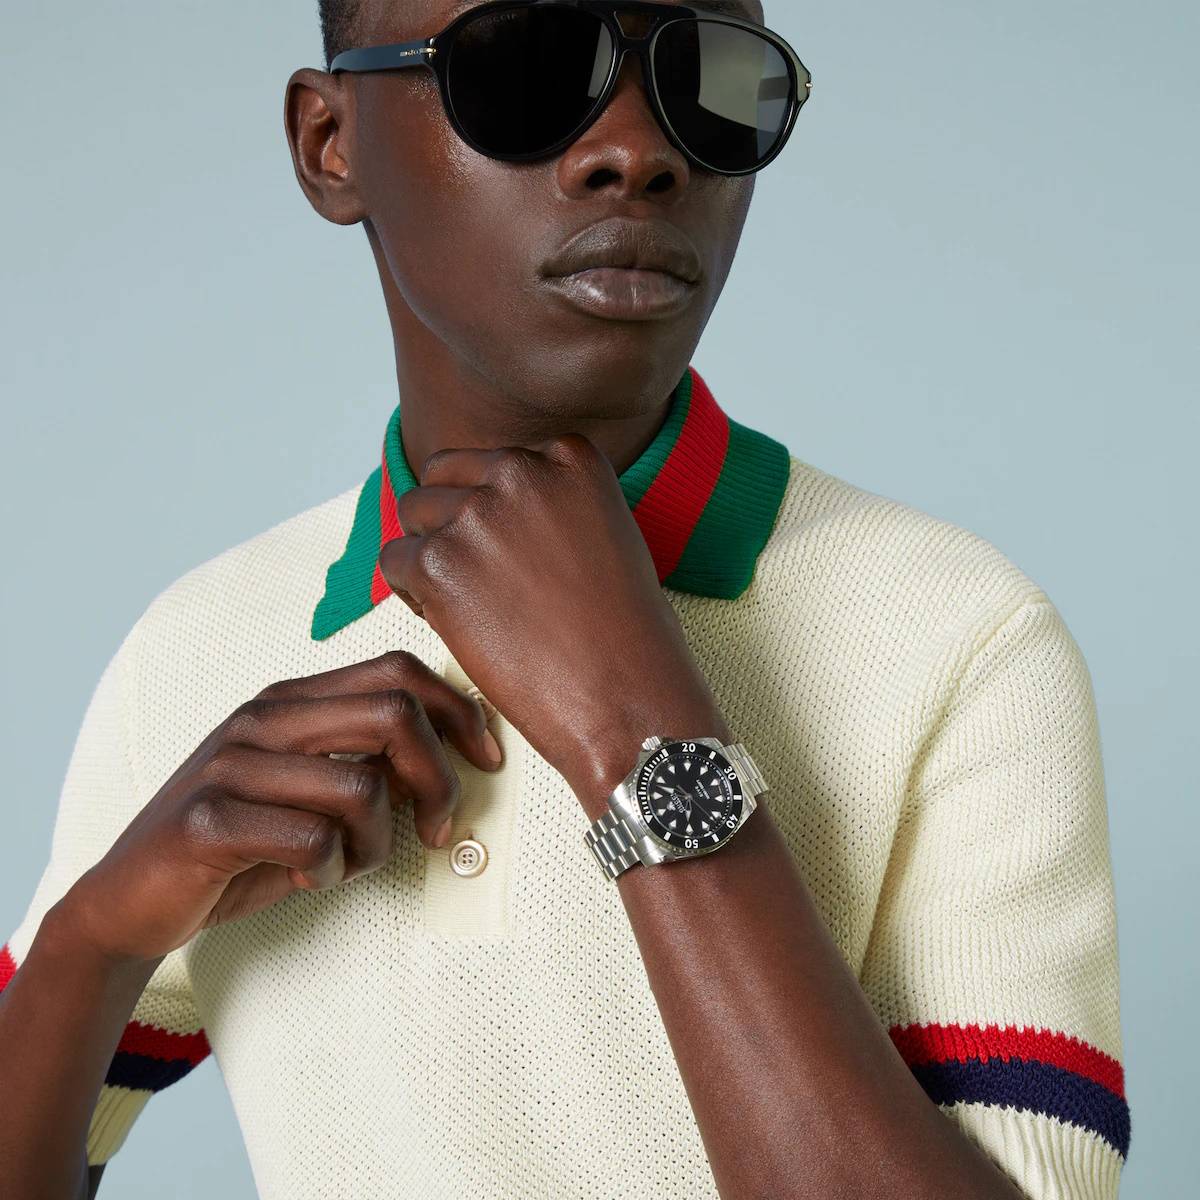 Zegarki z kolekcji Dive marki Gucci. Włoski dom mody Gucci przedstawia nową kolekcję sportowych zegarków Dive, które występuję z dwoma rodzajami pasków – gumowym oraz stalowym.